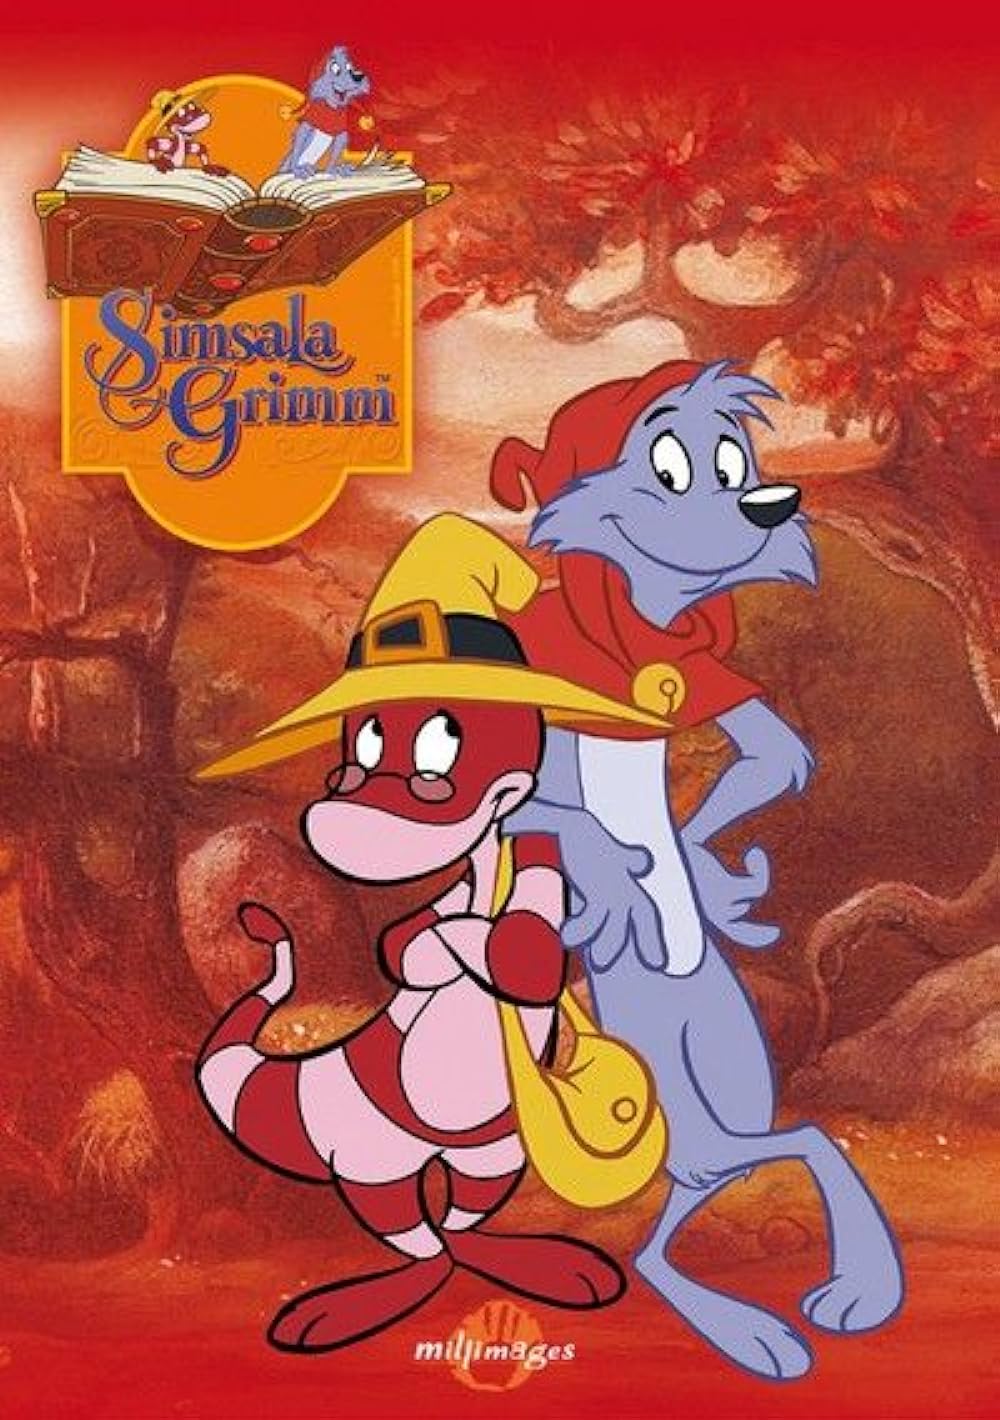 (2010) Simsala Grimm II: The Adventures of Yoyo and Doc Croc